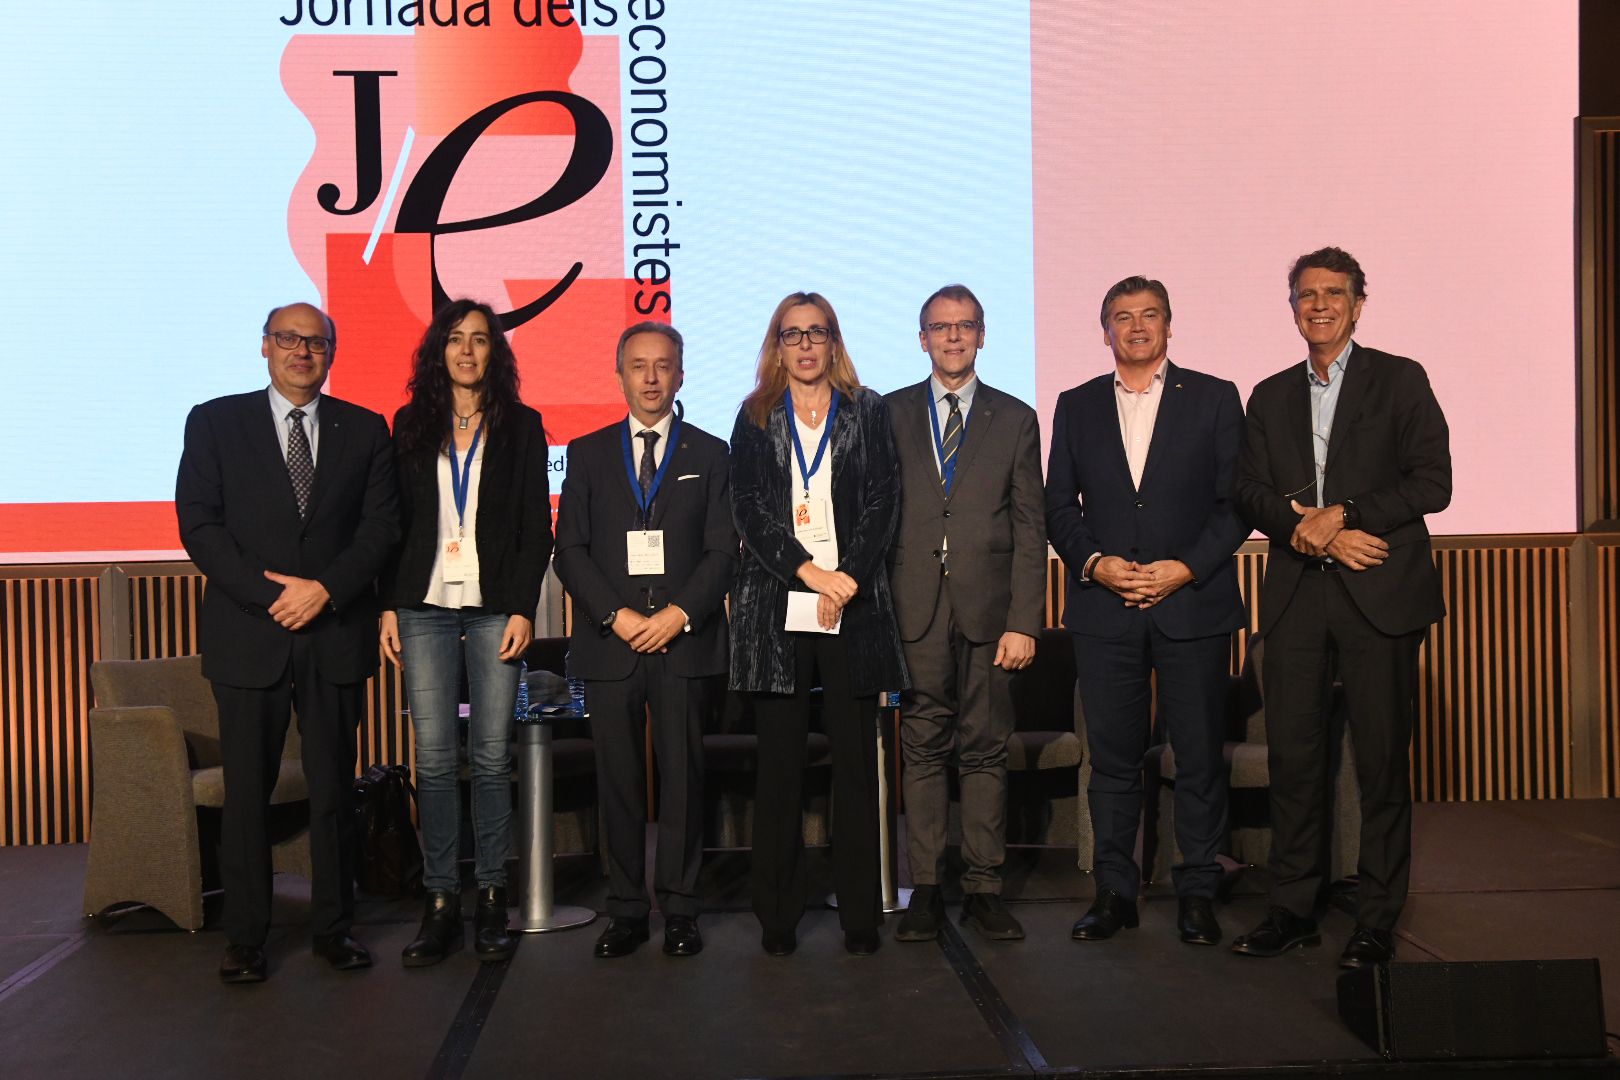 El president de la Cecot ha debatut sobre els reptes per a la sostenibilitat de l'economia catalana a la Jornada dels Economistes 2022